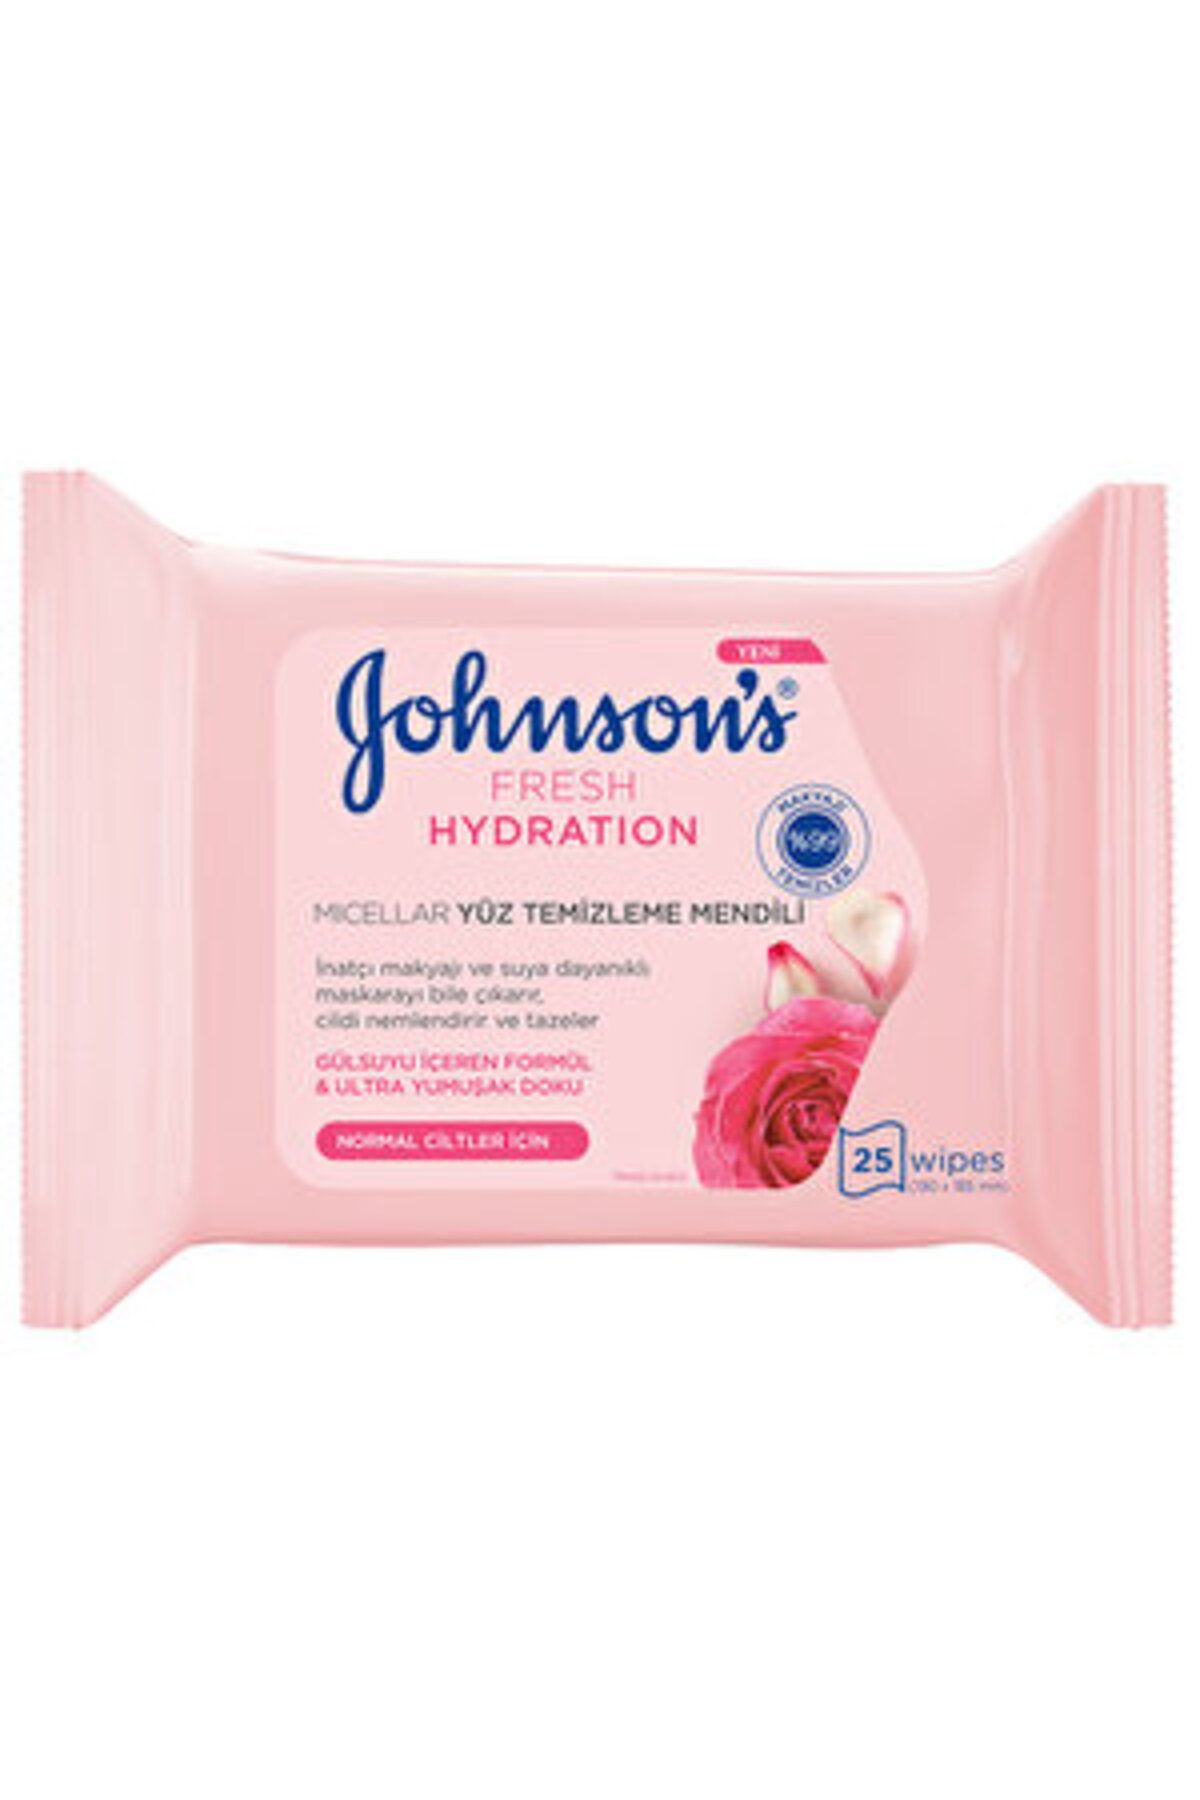 Johnson's Gül Suyu Özlü Makyaj Temizleme Mendili 25 Adet ( 1 ADET )